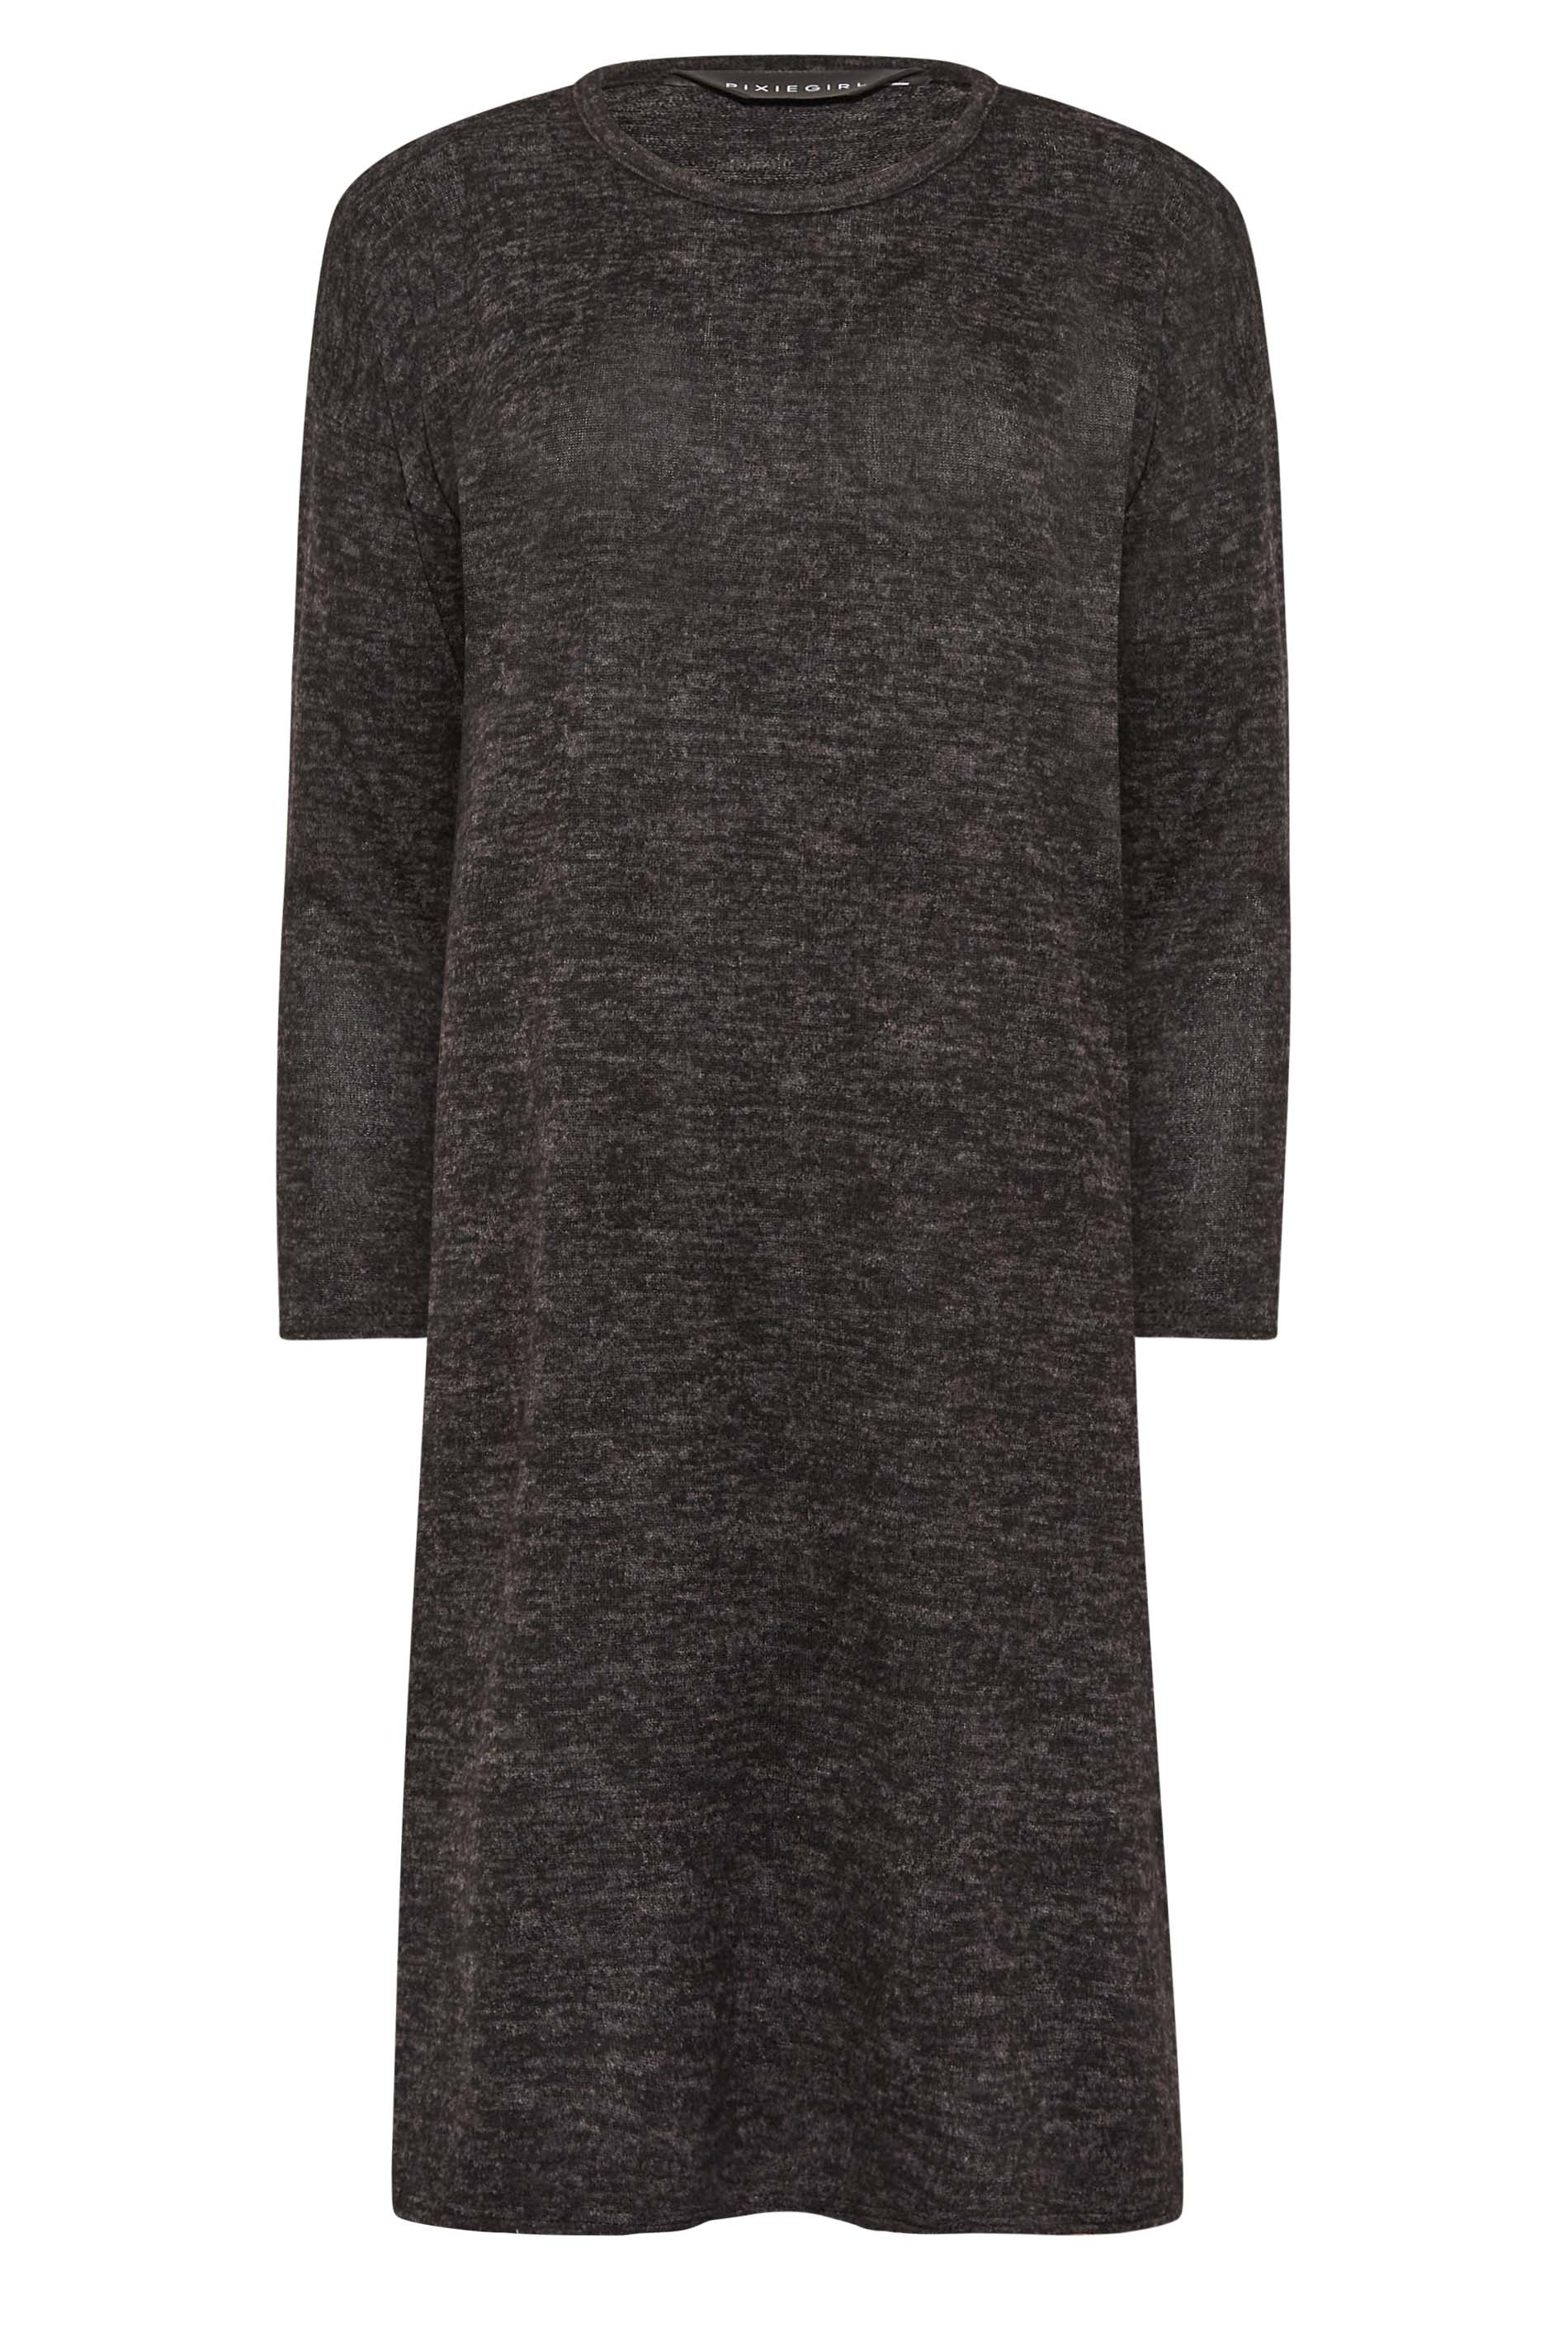 Petite Charcoal Grey Soft Touch Midi Jumper Dress | PixieGirl